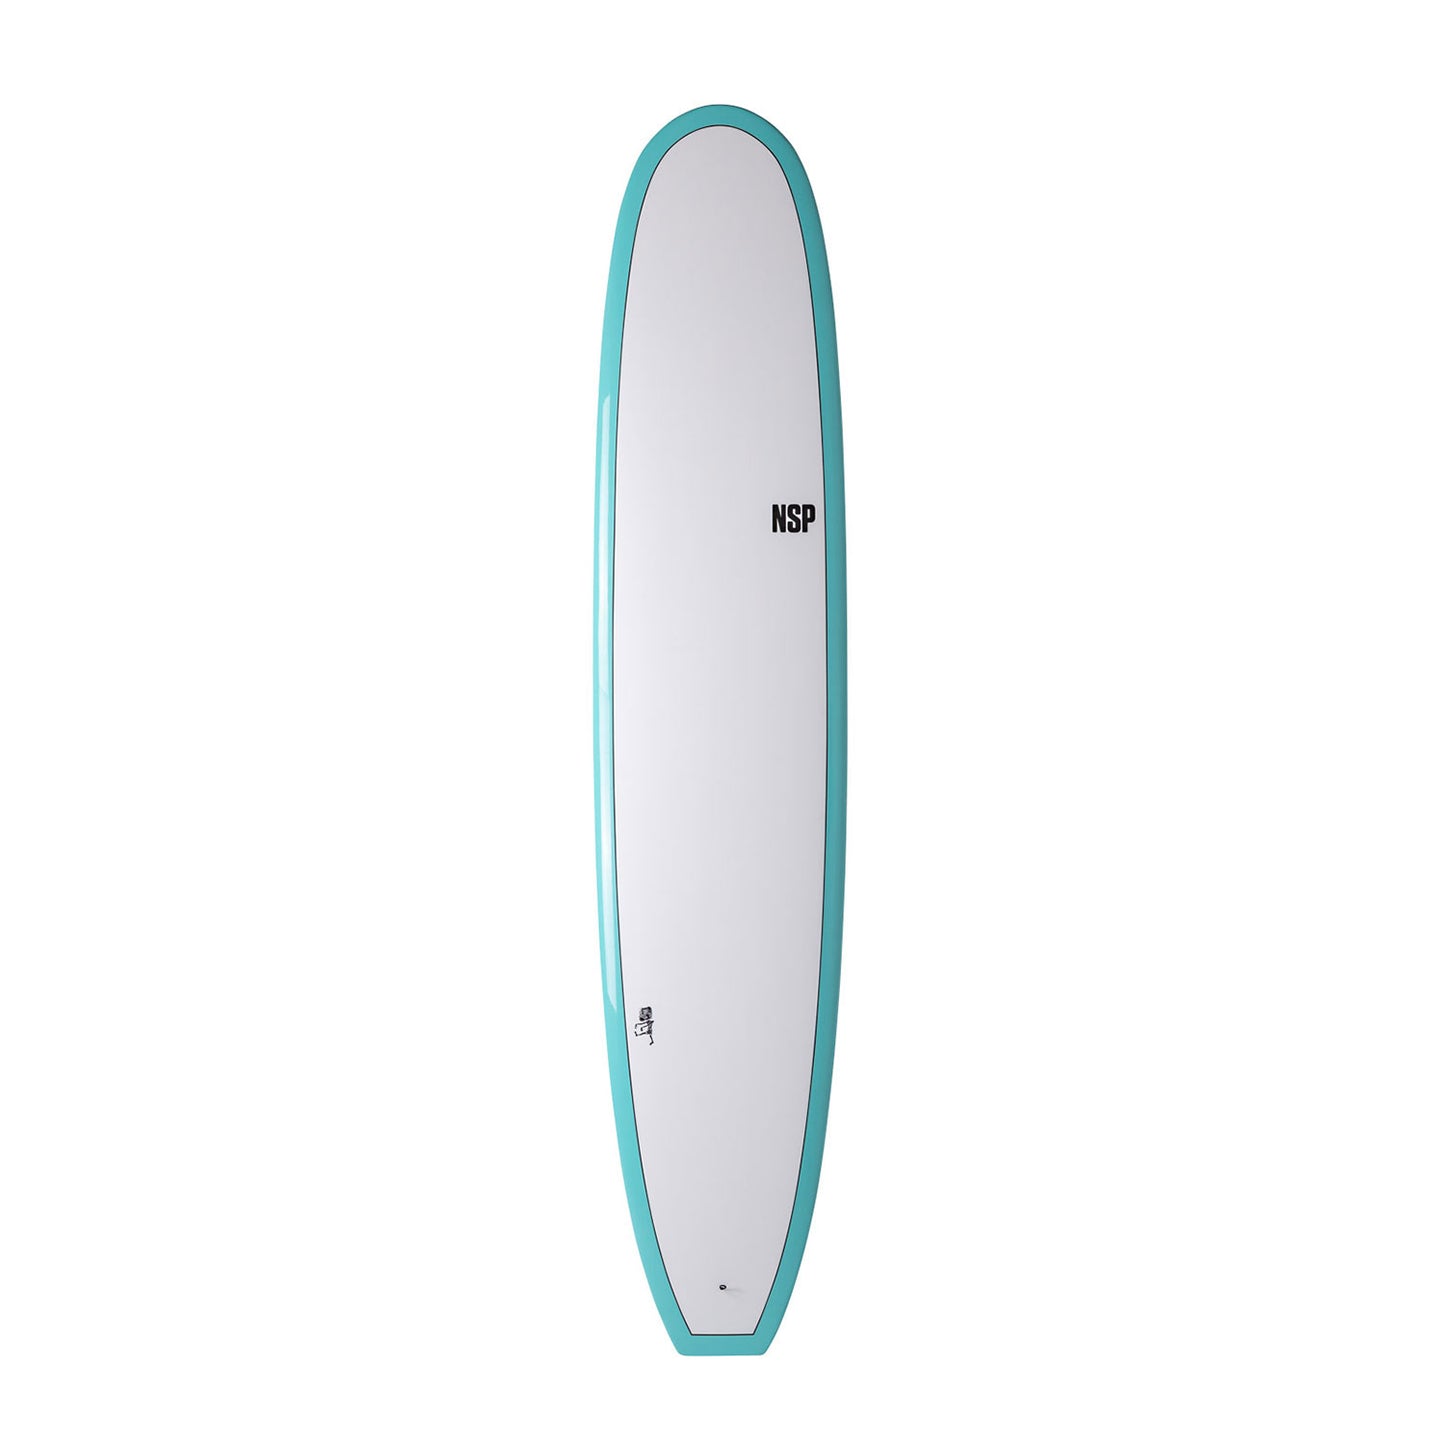 NSP-Elements-HDT-Sleepwalker-White-deck-surfboard-longboard-tully-st-john-galway-ireland-blacksheepsurfco-NSP-sleep-walker-sea-mist-longboard-surfbord-10-inch-fin-galway-ireland-blacksheepsurfco